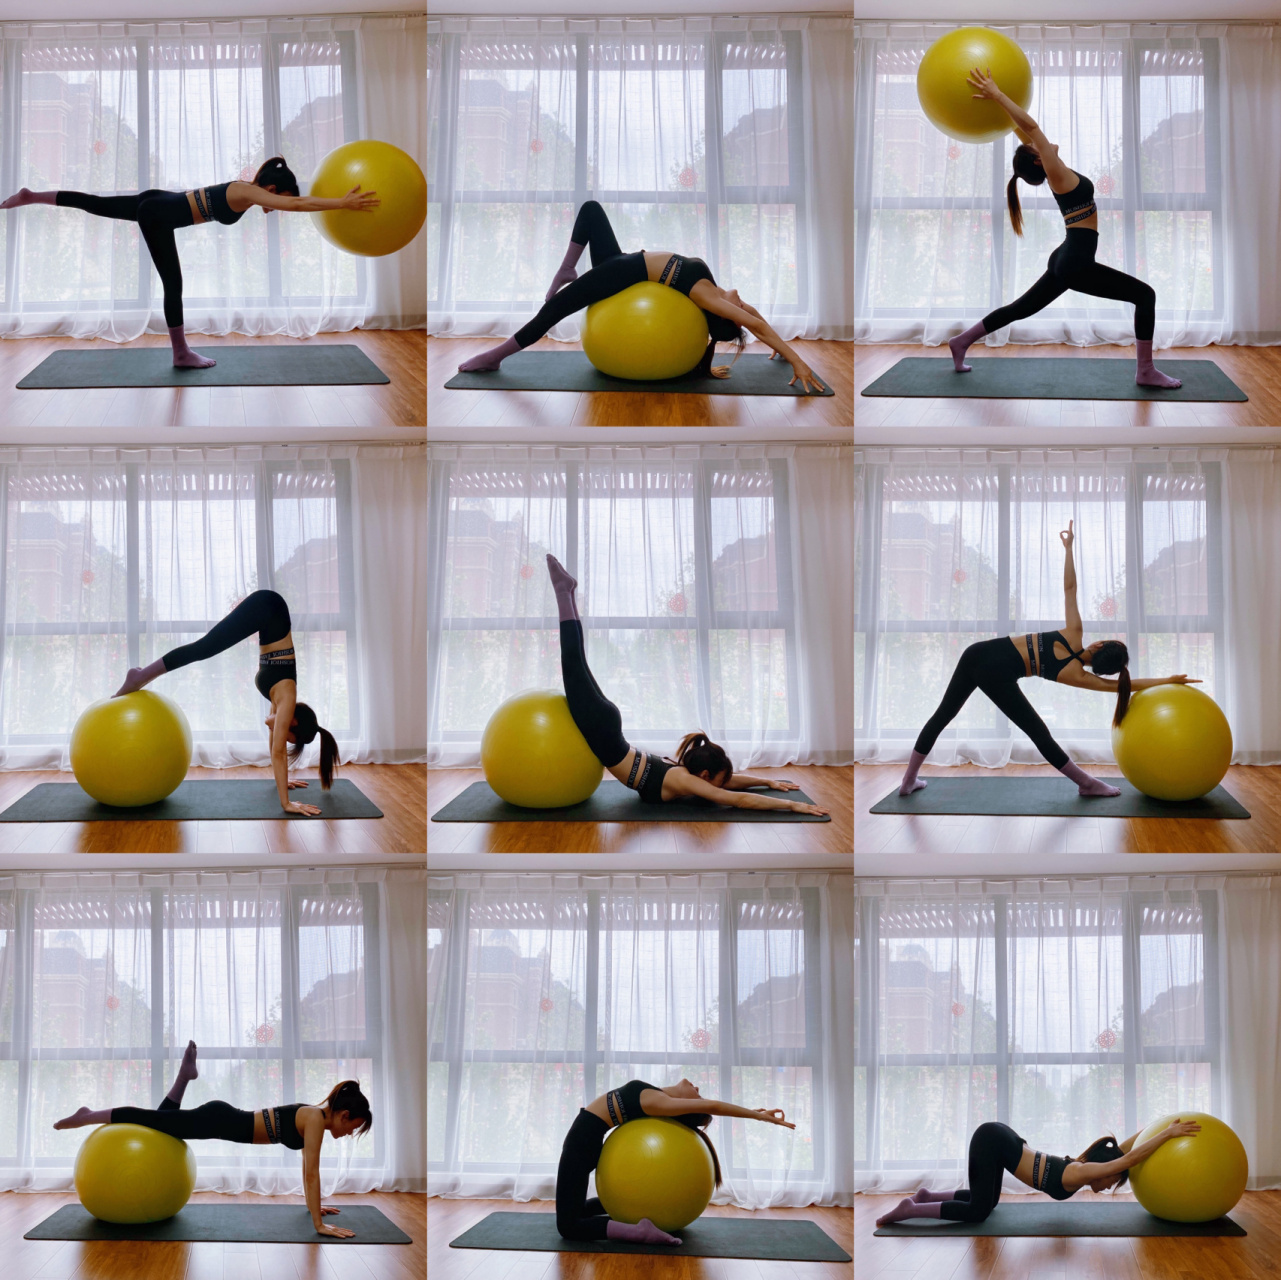 球瑜伽体式照91 瑜伽球是练习中很好的辅助工具,它可以助你强化你的